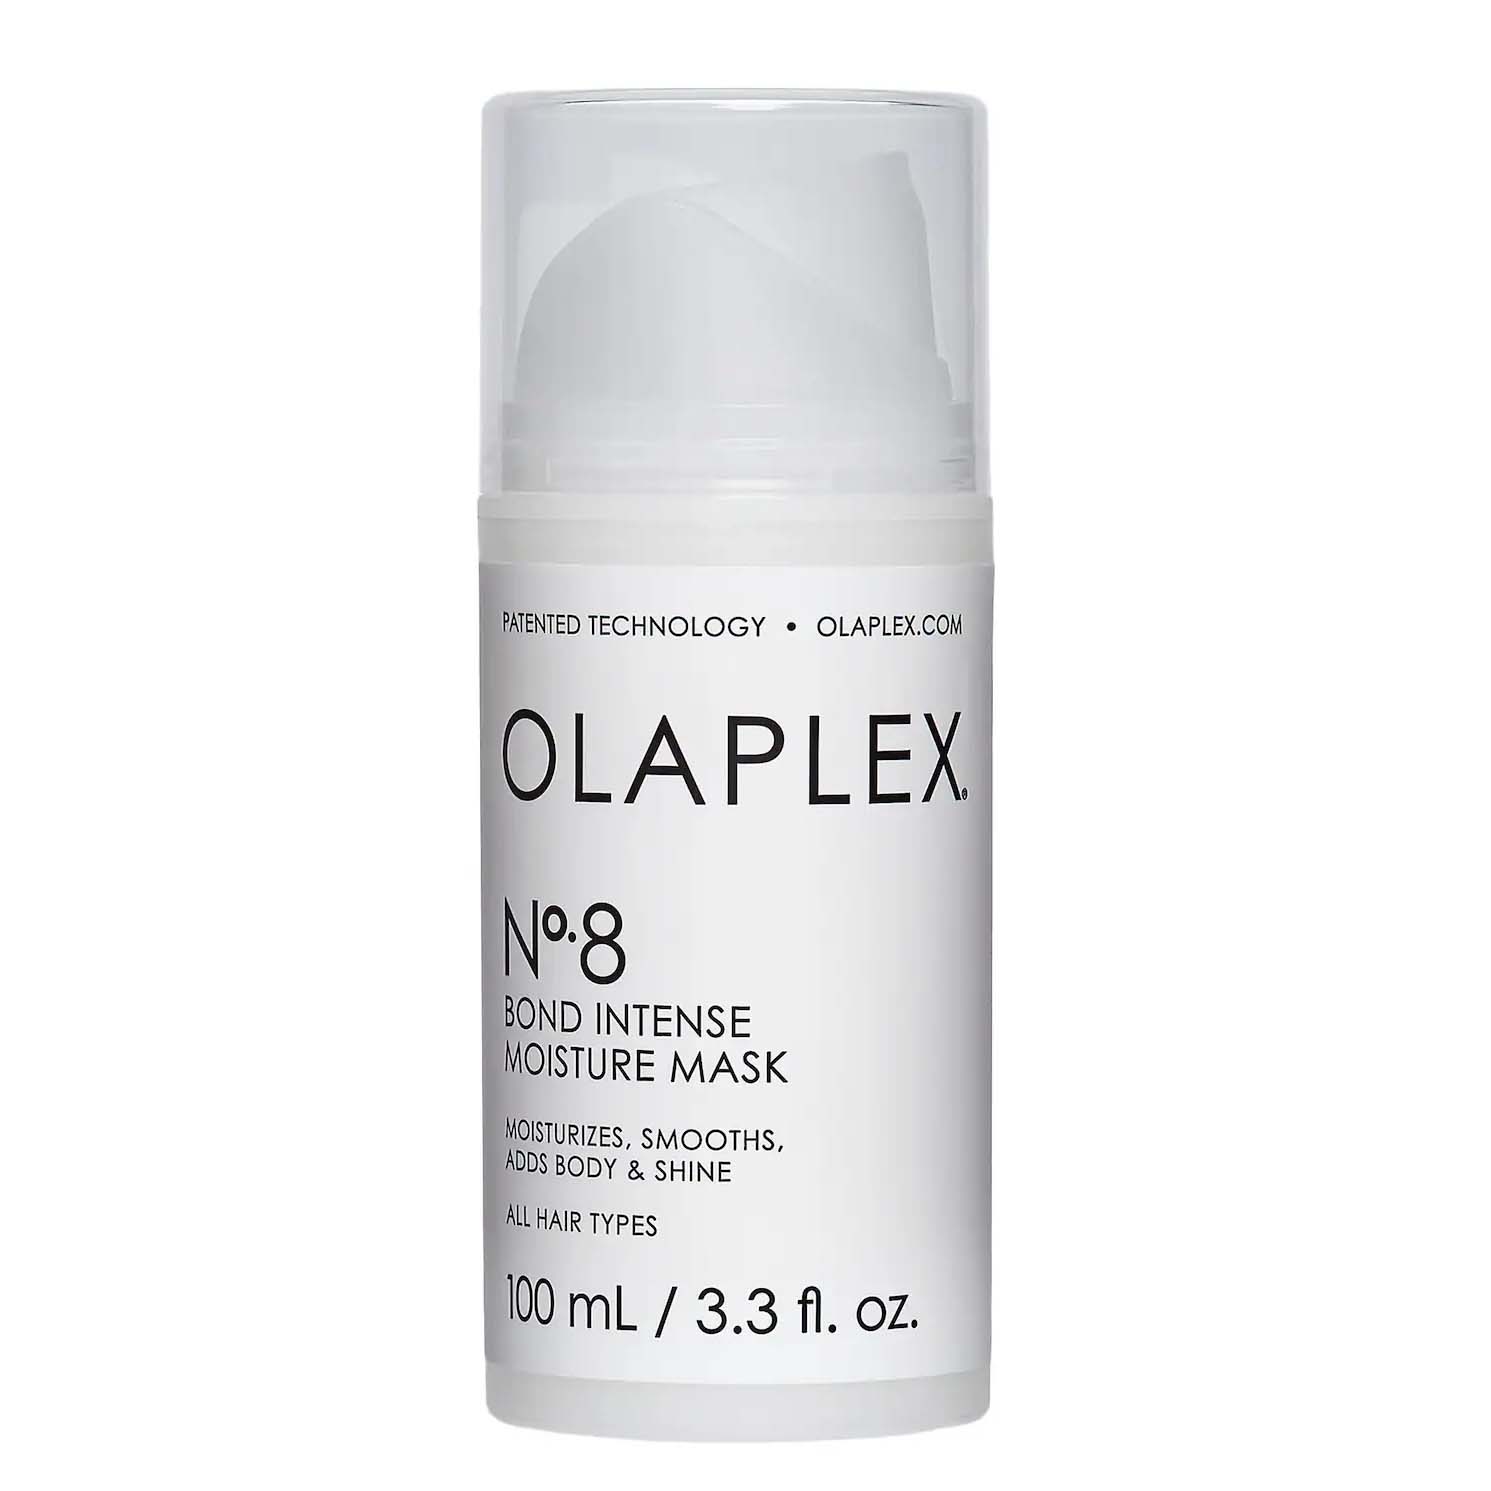 Olaplex No. 8 Bond Intense Moisture Mask in a white bottle